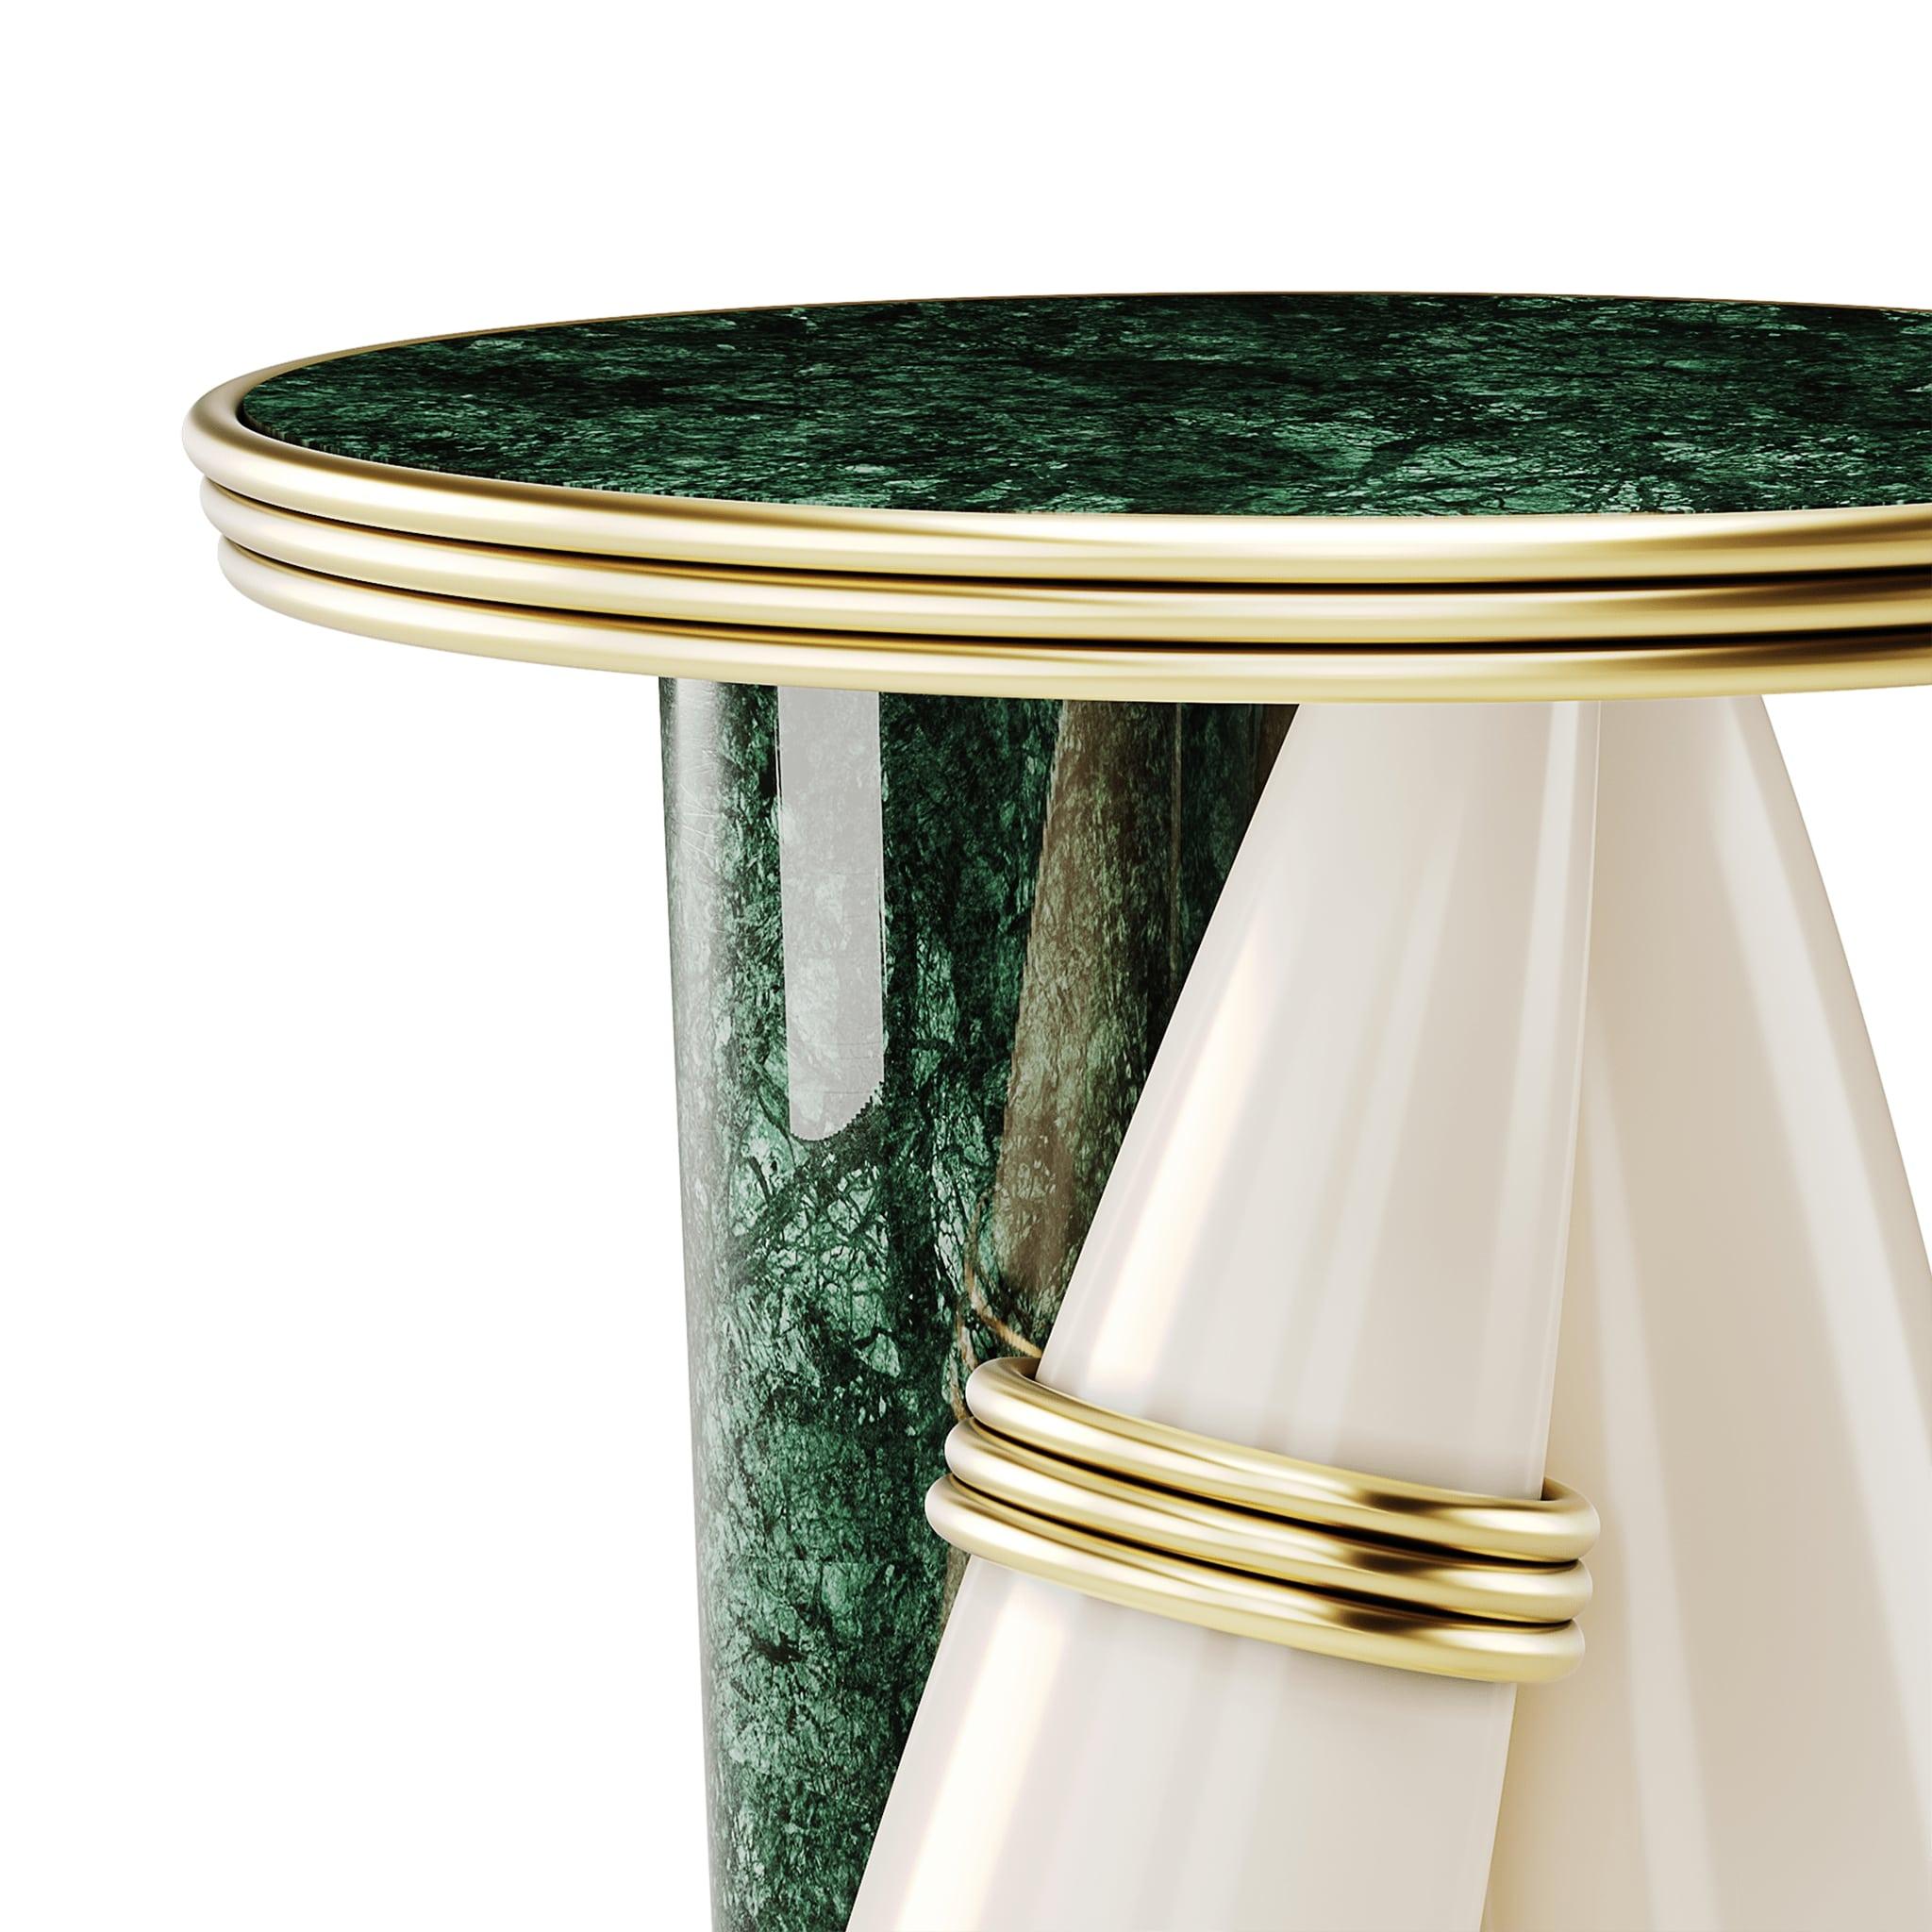 Table d'appoint ronde contemporaine à 3 pieds en marbre  Marbre poli  Laque brillante

La table d'appoint Billie possède une attitude saisissante et des formes sculpturales. Une élégante table en marbre avec des détails en laiton poli promet de